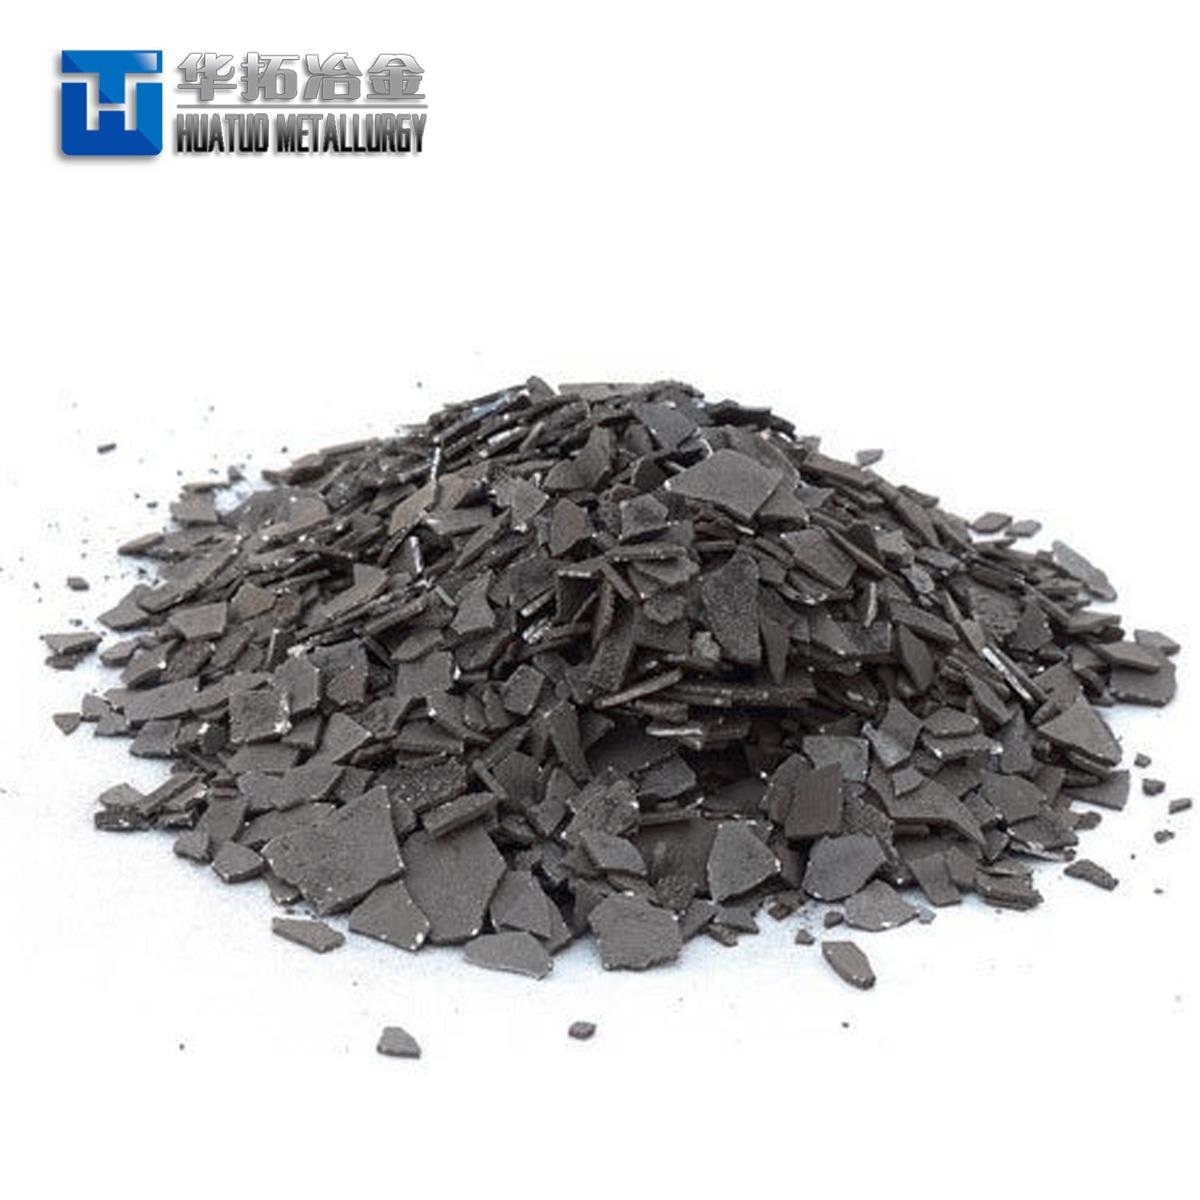 Electrolytic Manganese Metal Flakes Cheap Price 4